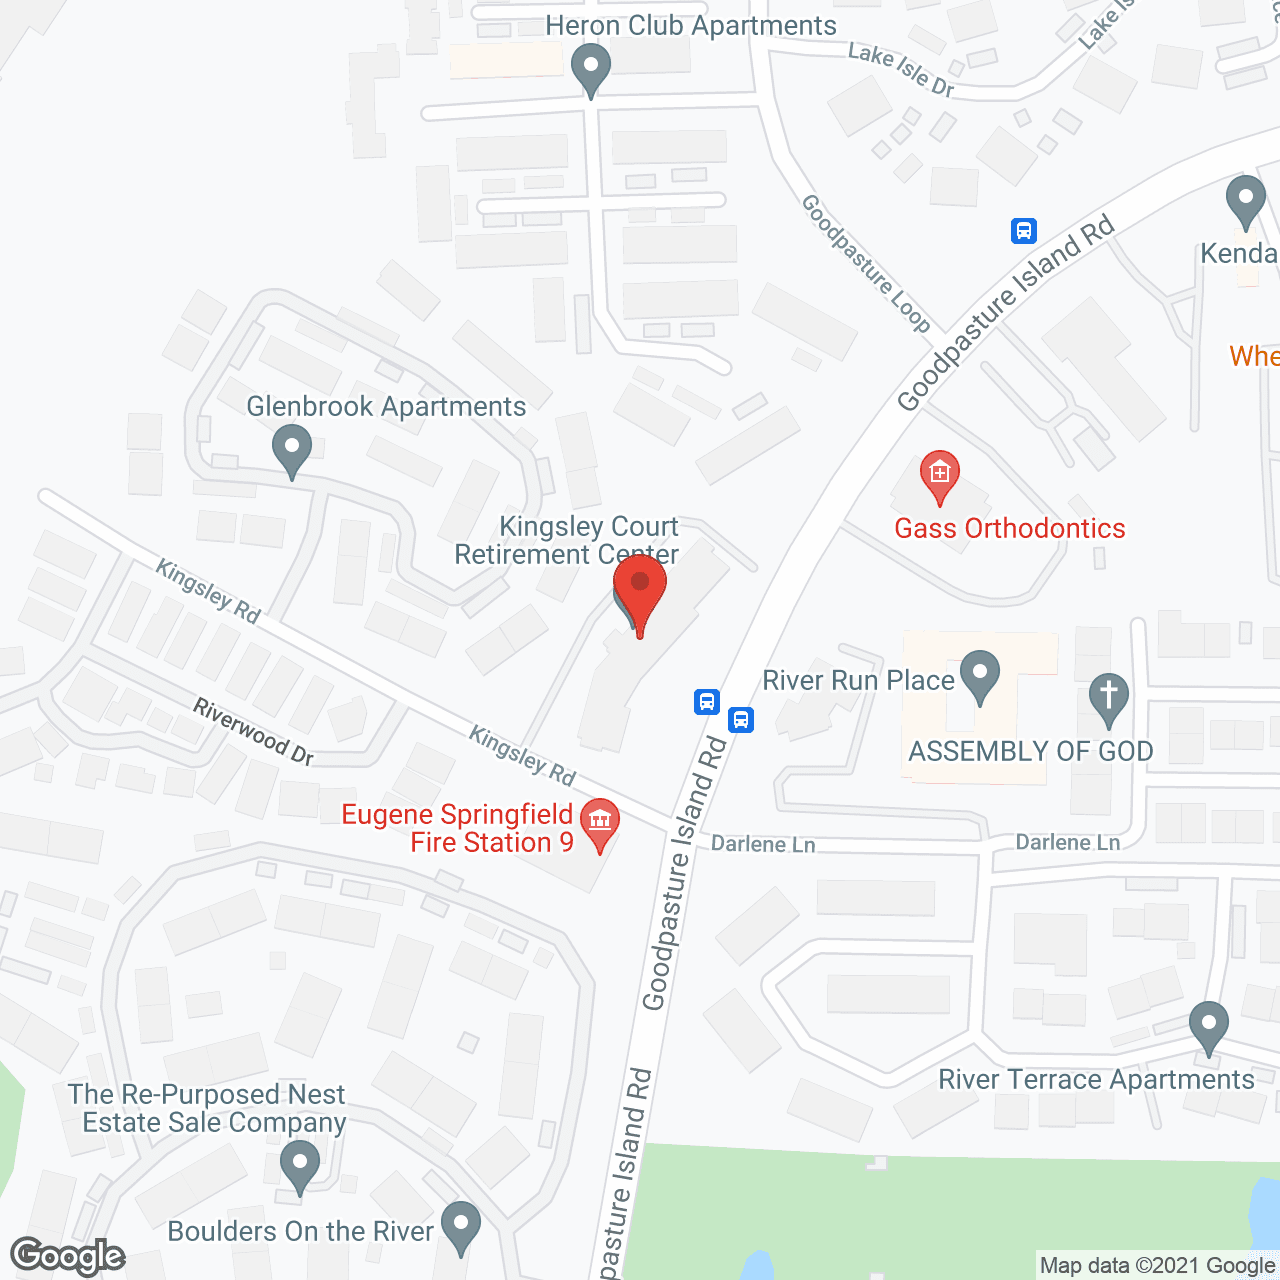 Kingsley Court Retirement Center in google map